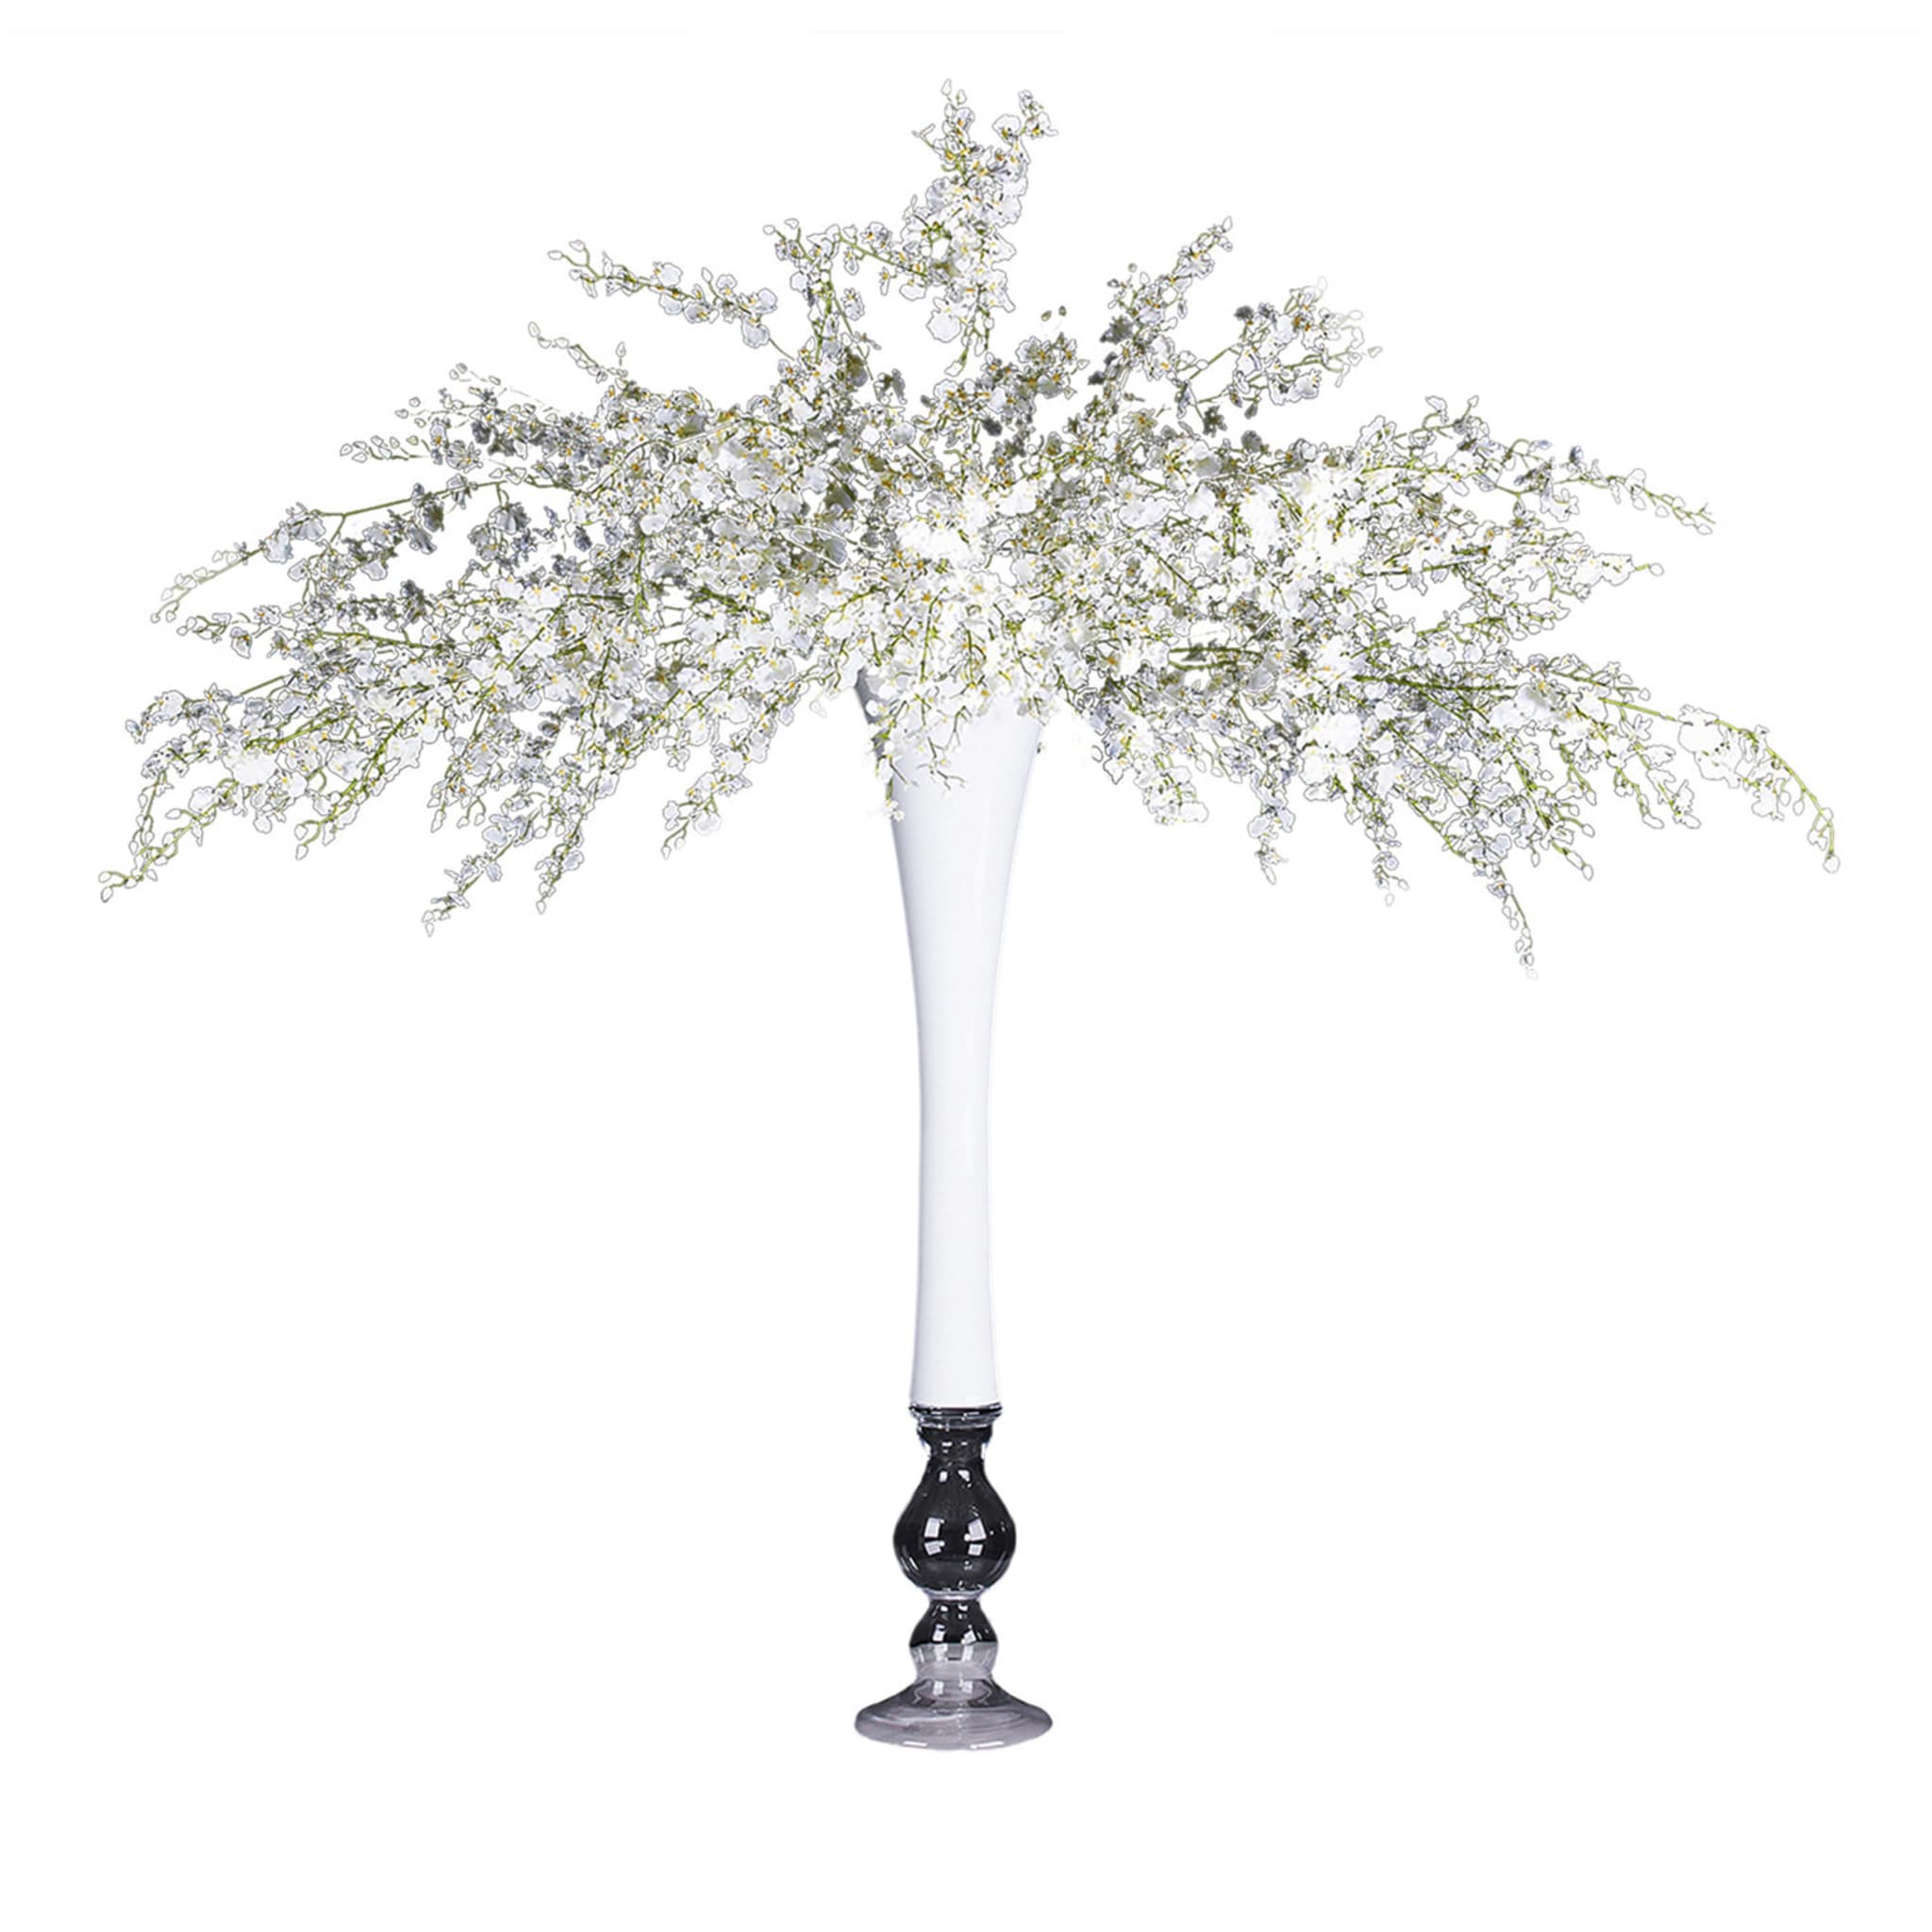 Composizione floreale bianca Sayonara con vaso bianco - Vista principale